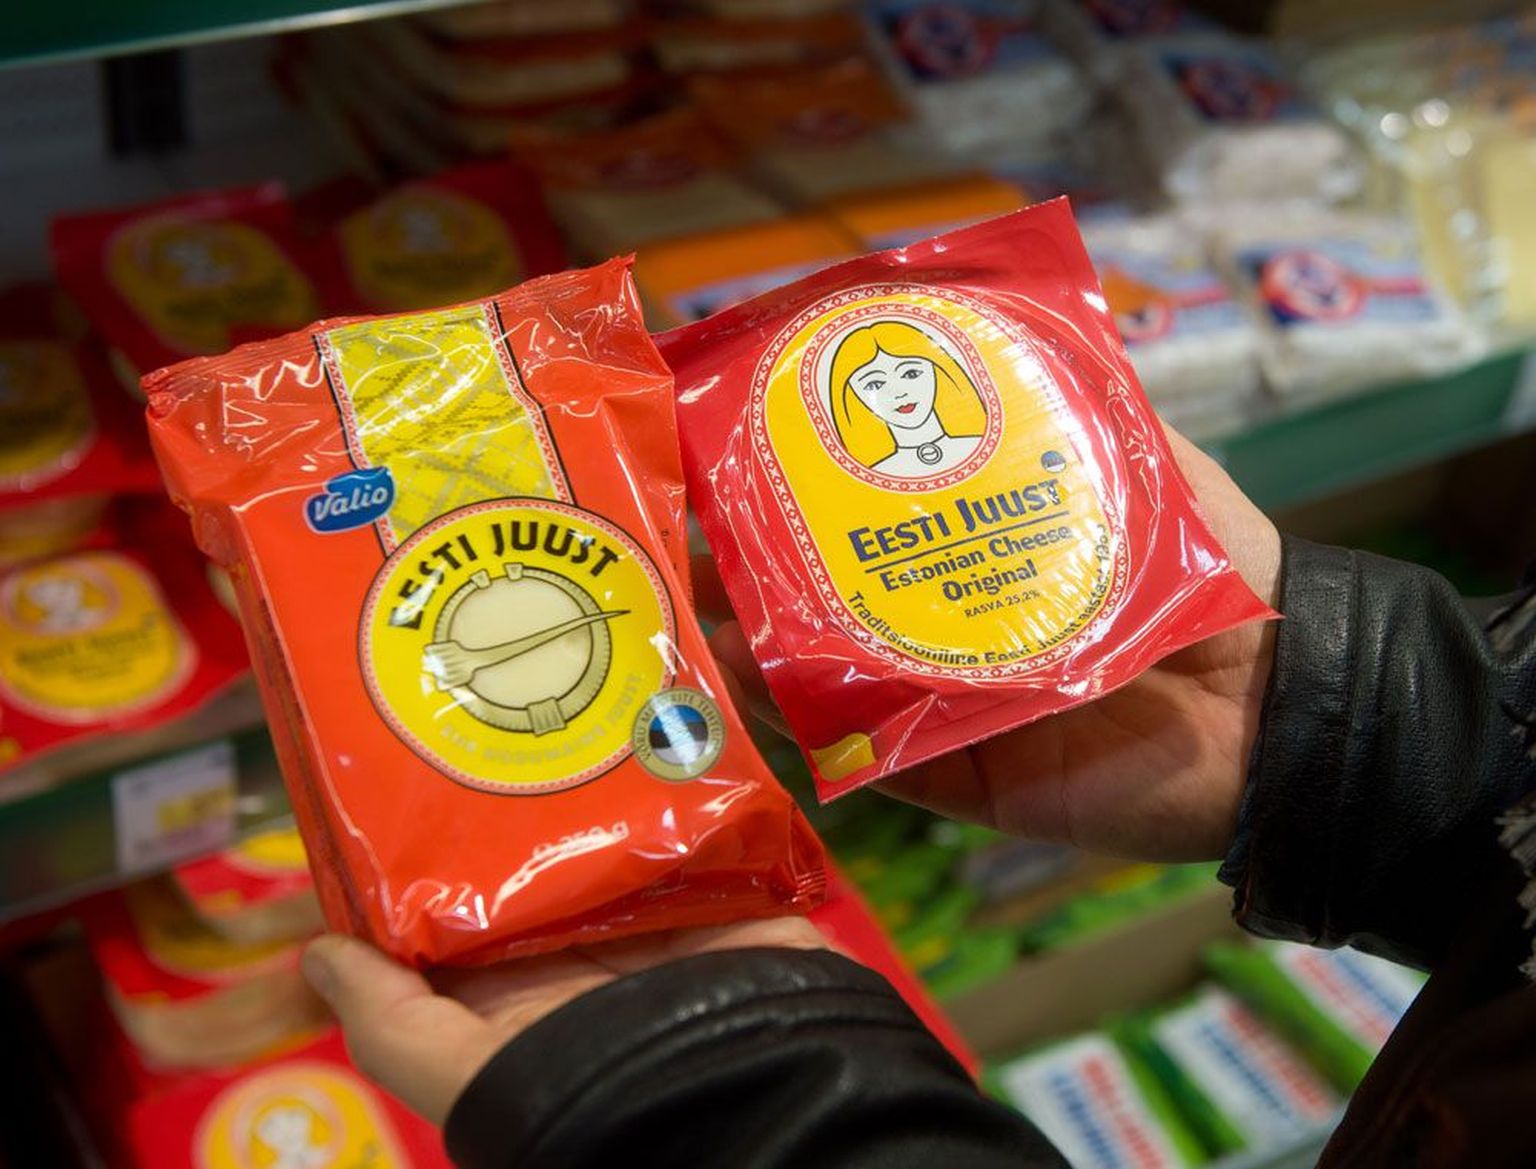 Valio Eesti juustu pakendil on sama värvikombinatsioon – punane ja kollane –, nagu Estoveri Eesti juustu pakendil.